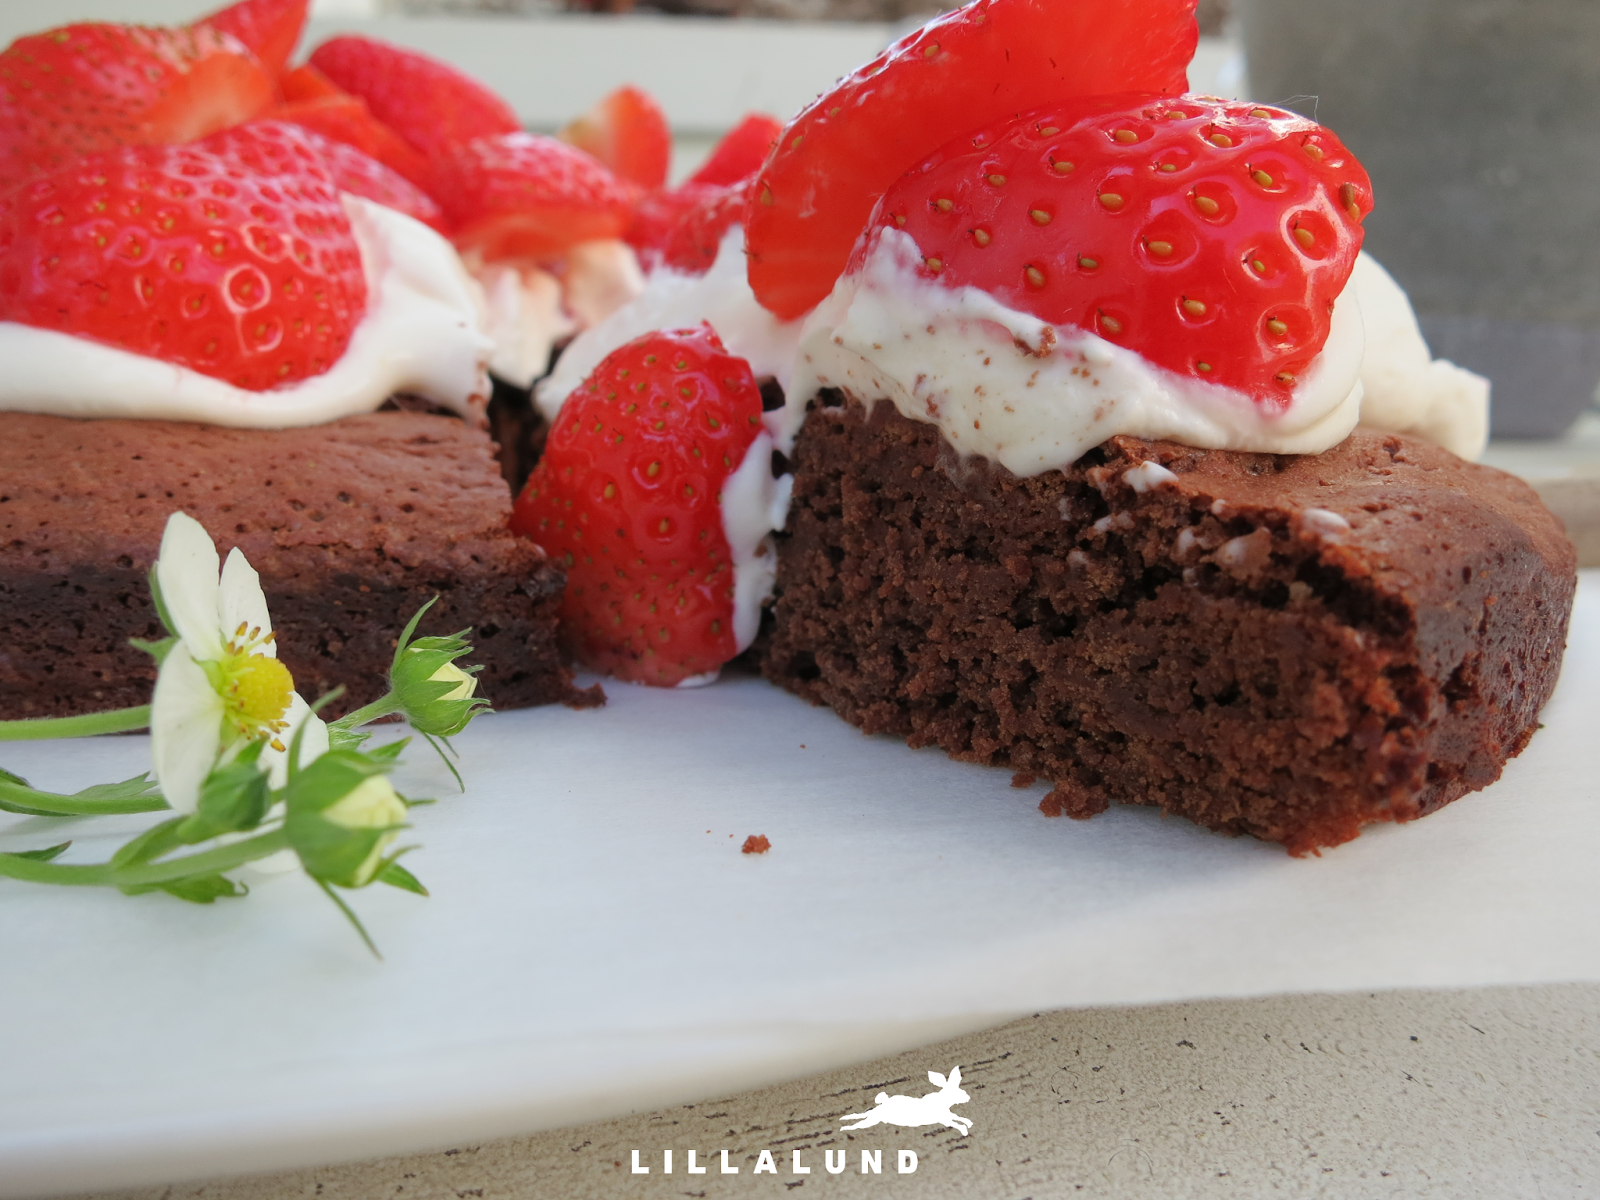 LILLALUND: Erdbeer-Schokoladenkuchen mit Vanillesahne